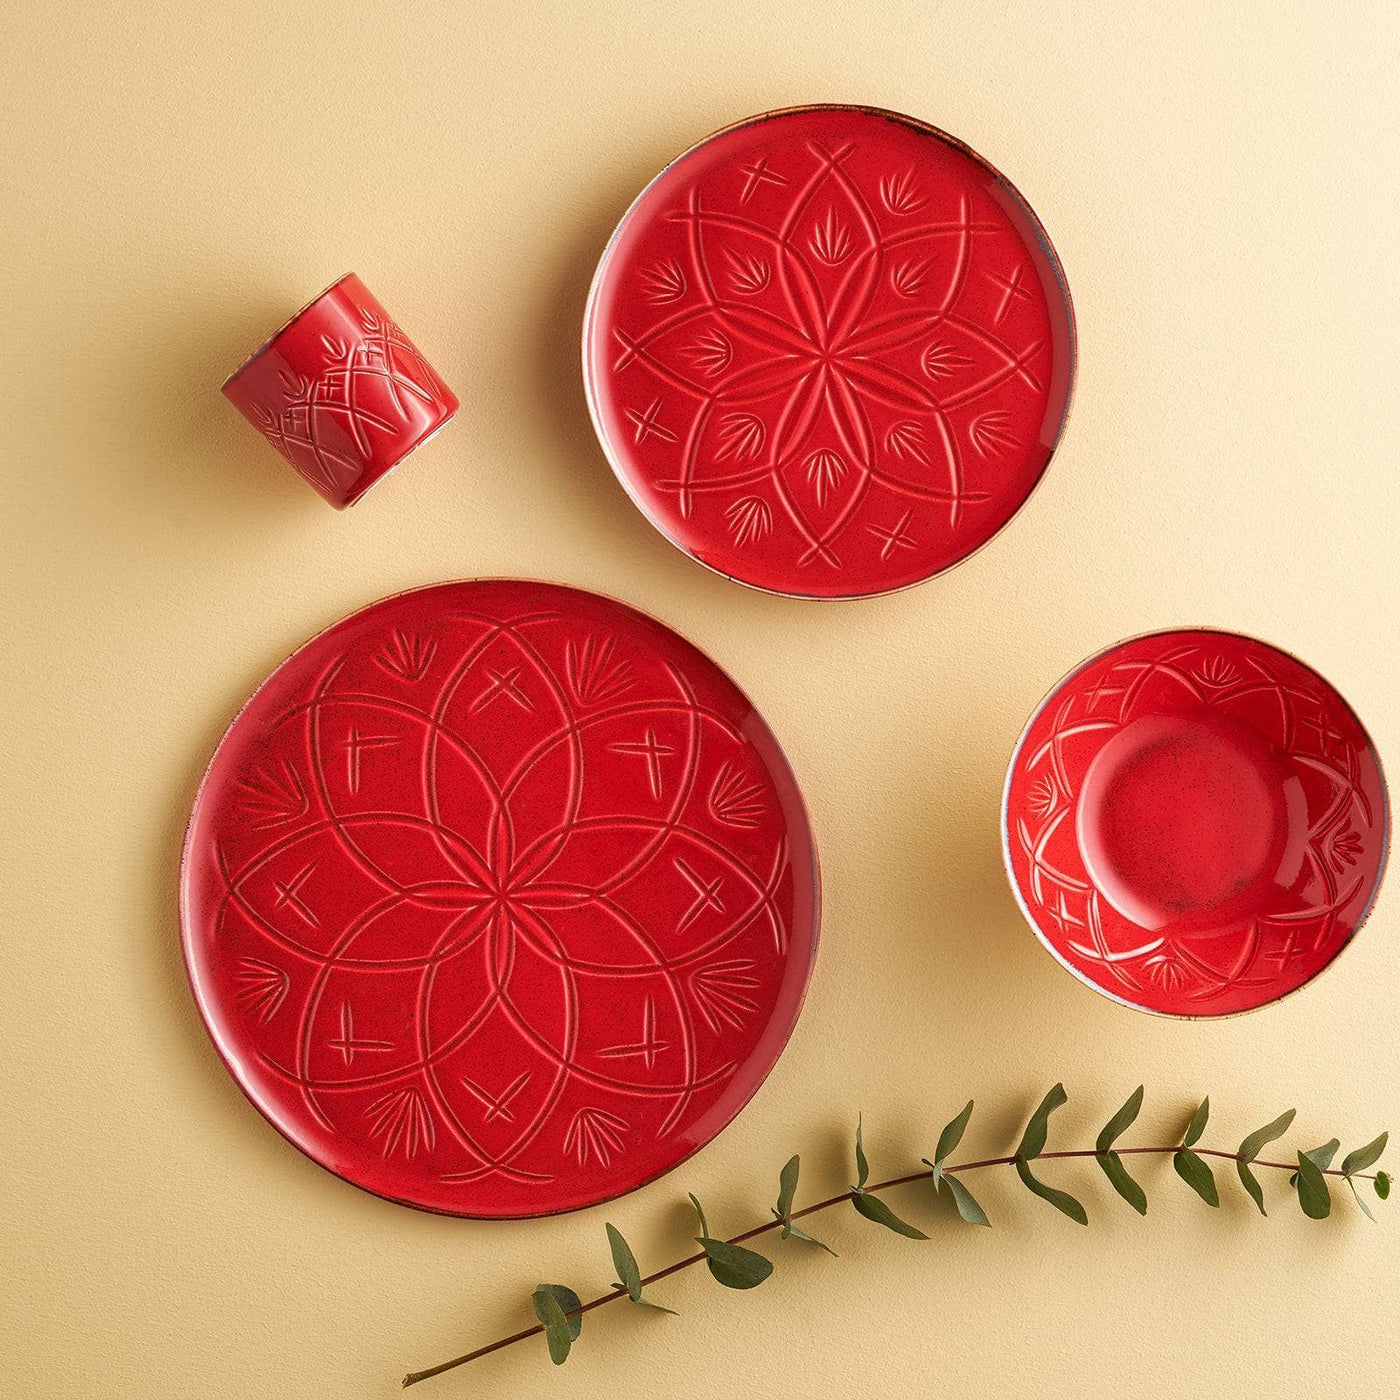 Christina Set of 6 Side Plates, Red, 21 cm Plates sazy.com